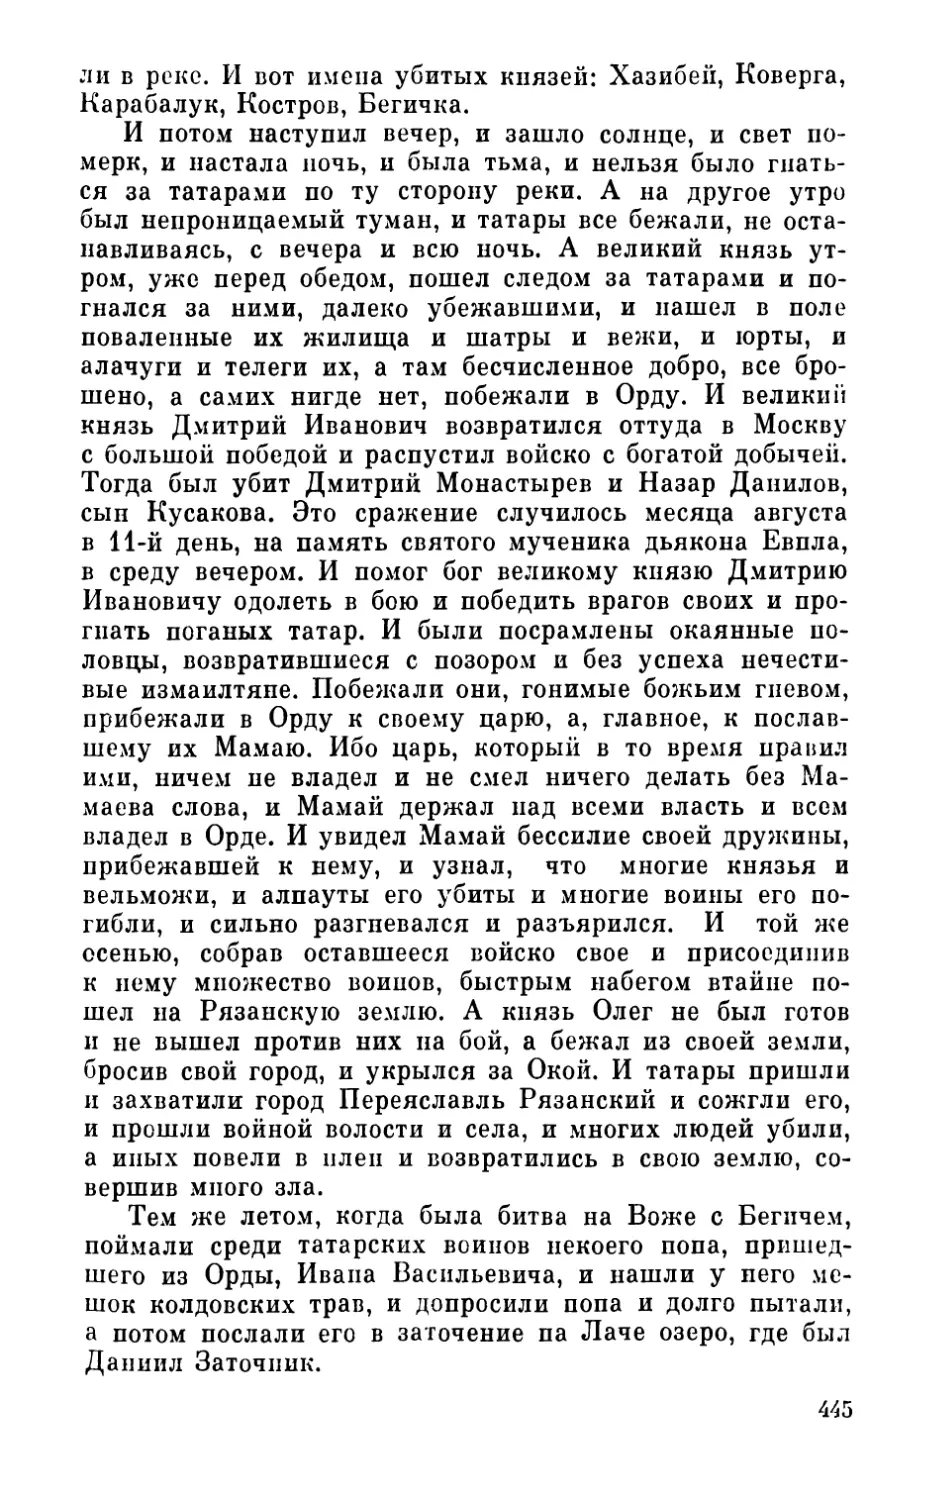 Московско-тверской договор 1375 г.